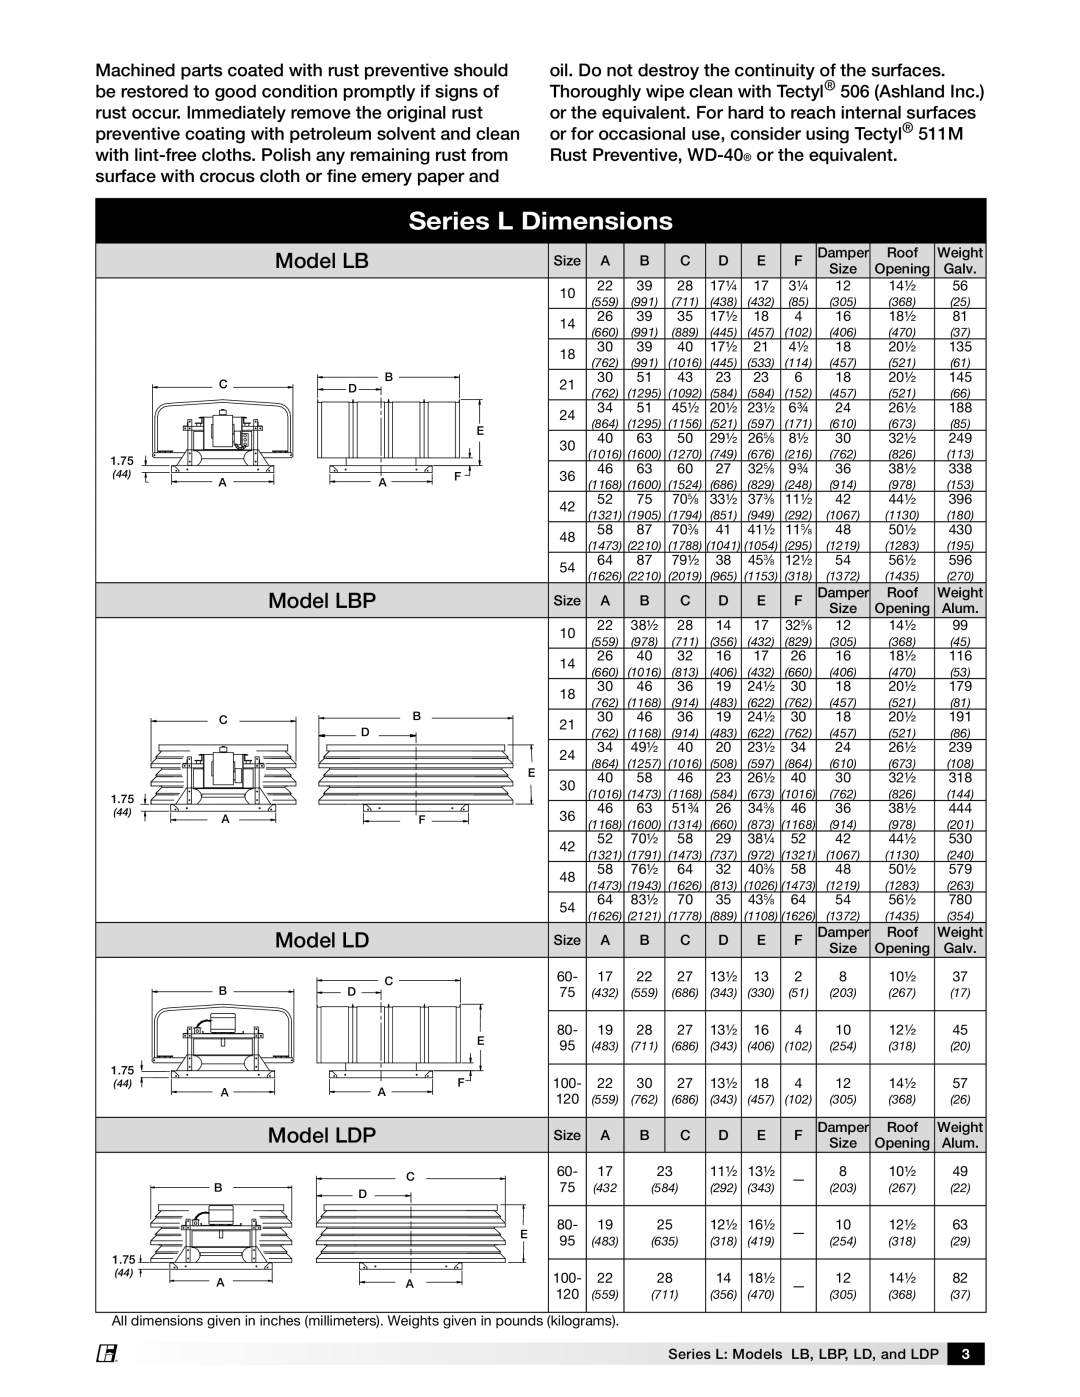 Greenheck Fan Series L Models LB, LD AND LDP manual Series L Dimensions, Model LBP, Model LDP 